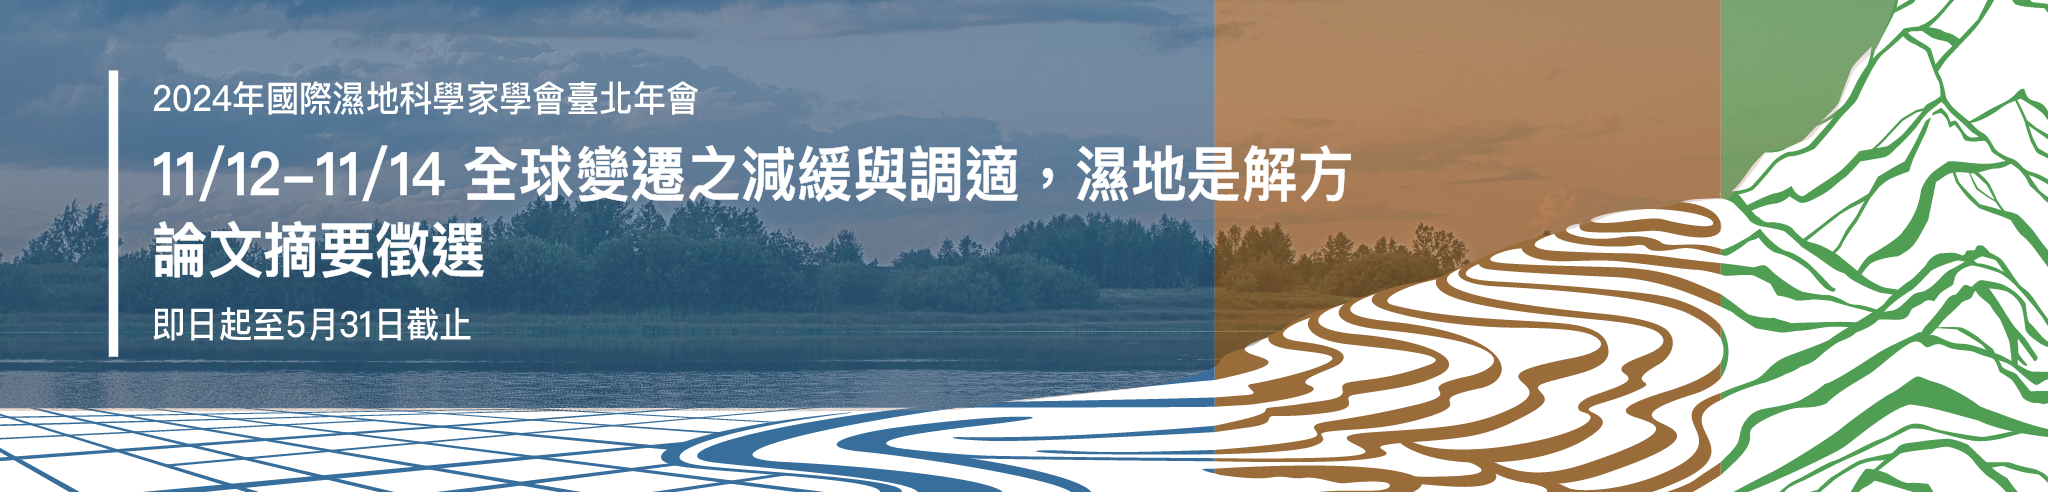 2024年國際濕地科學家學會臺北年會